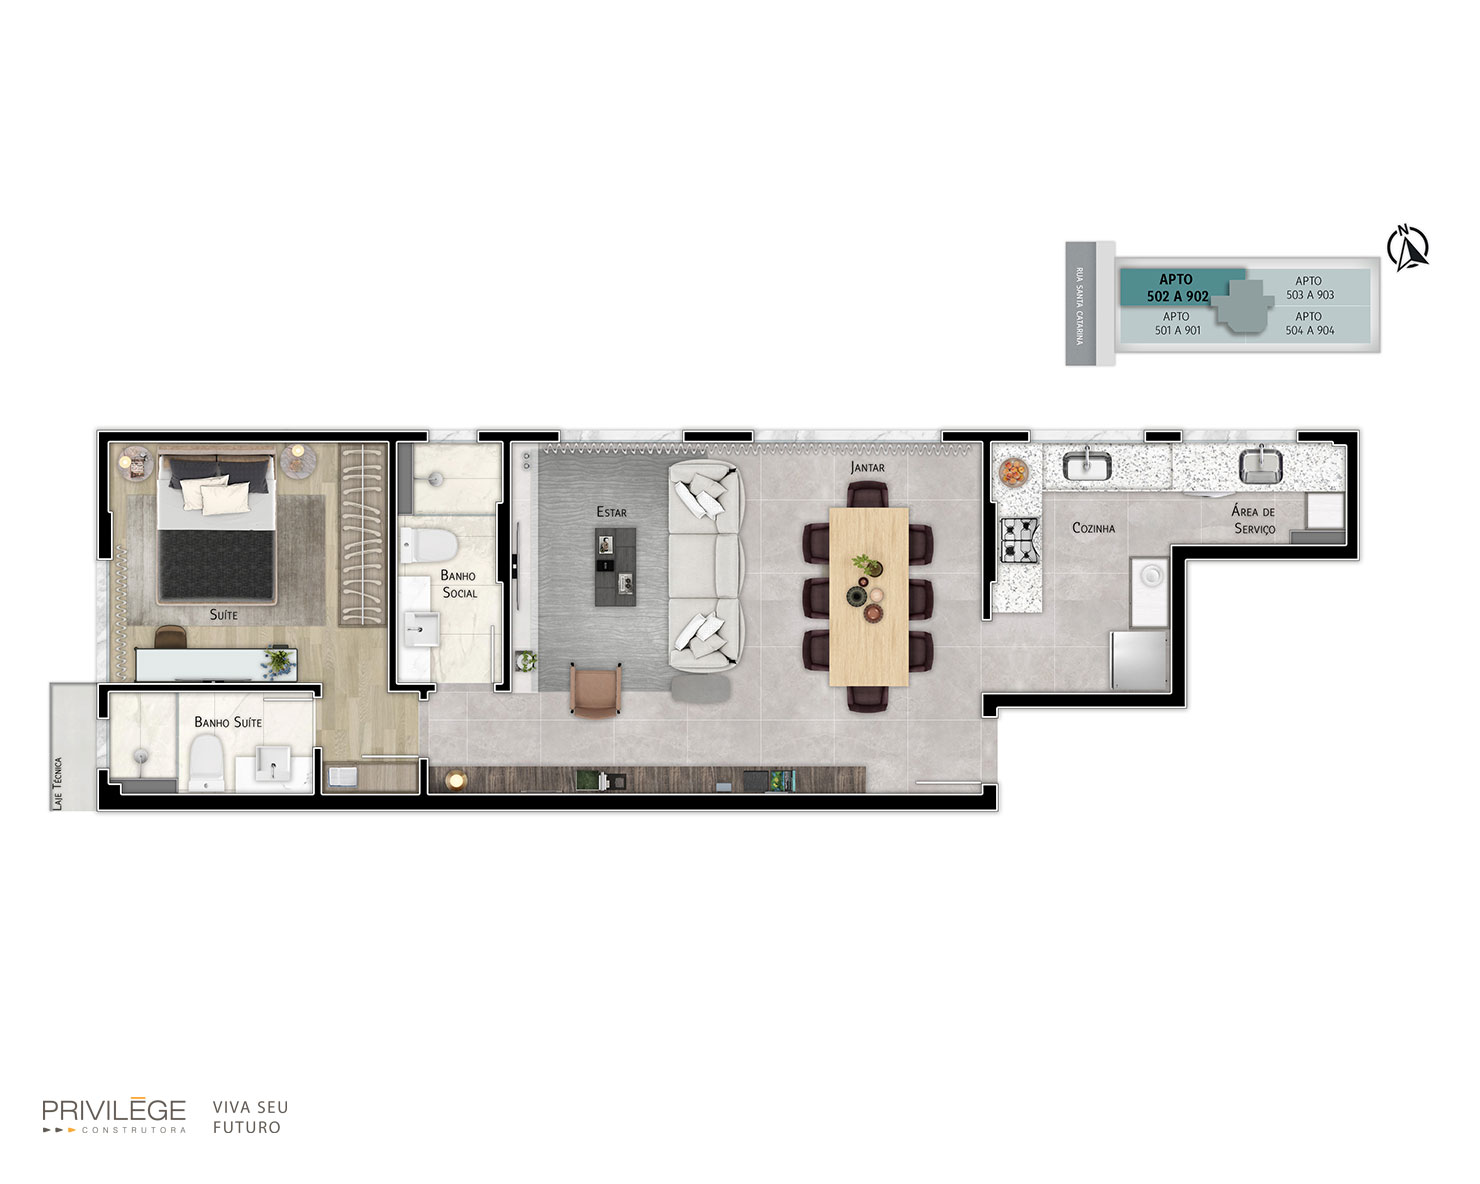 Apartamento studio 2 quartos – 502 a 902